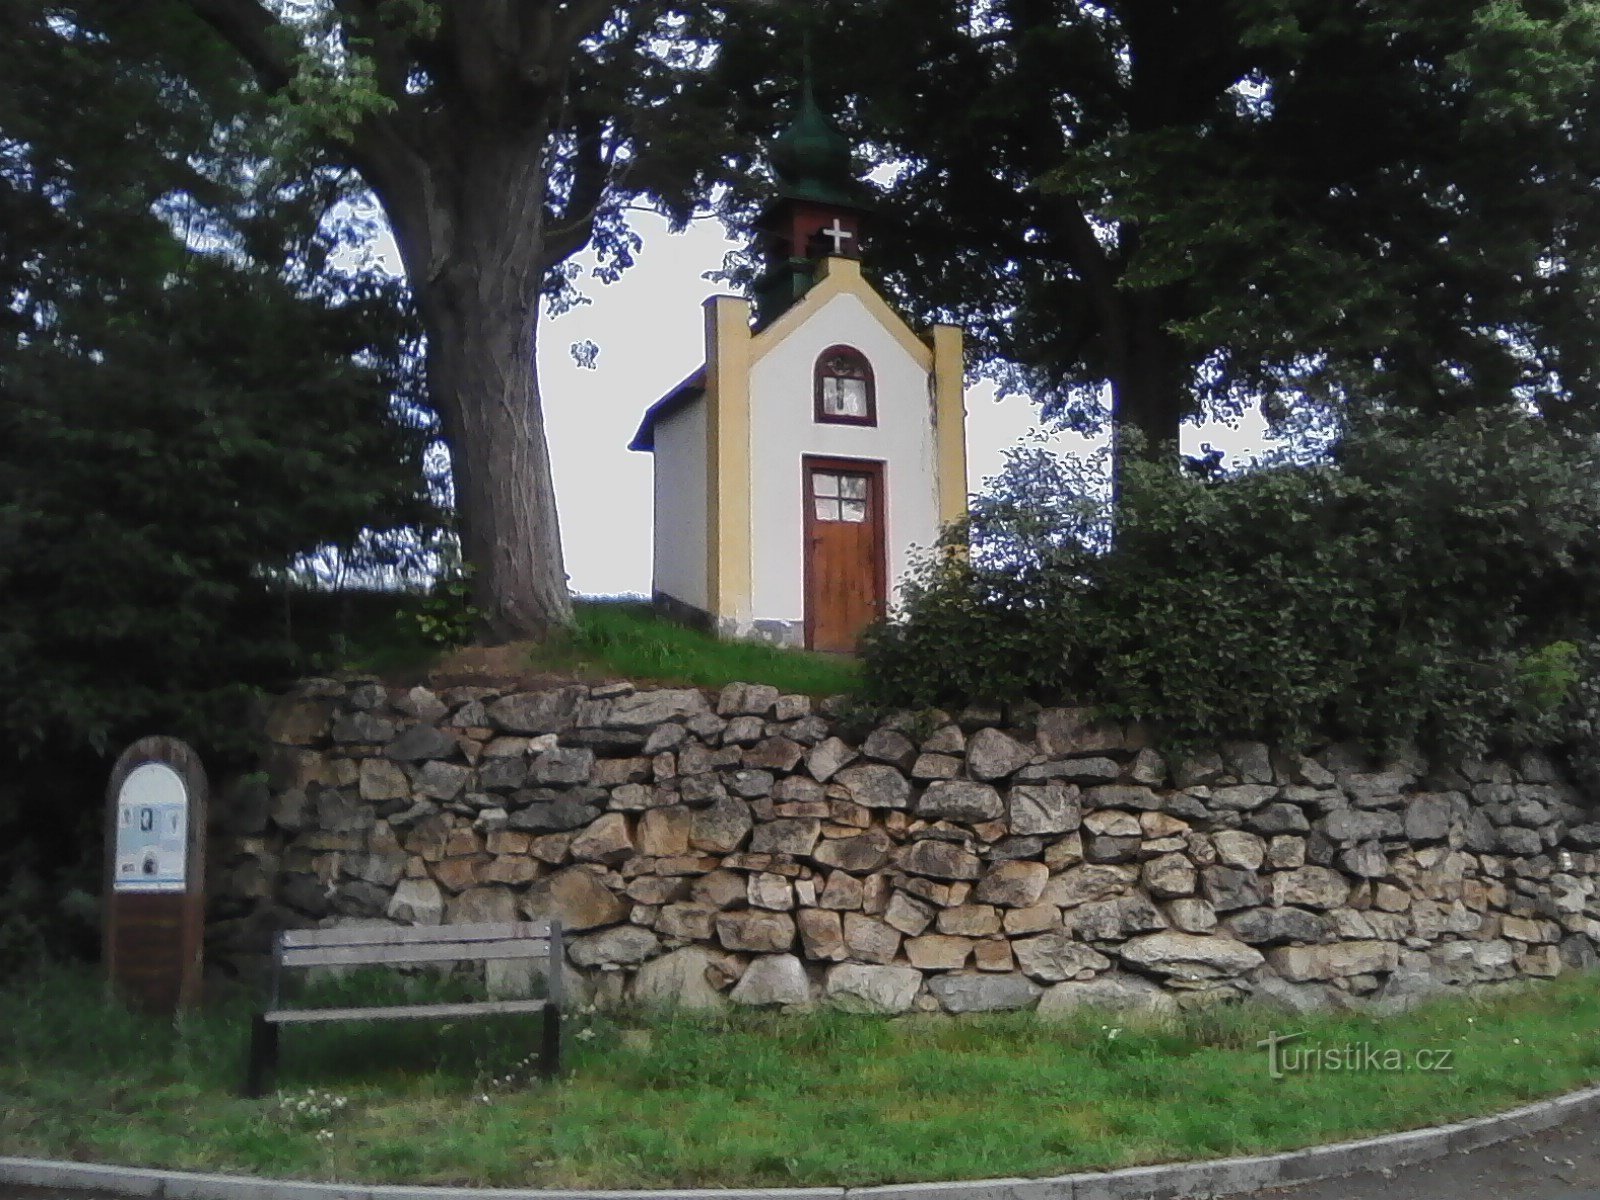 1. Capela Sf. Anna în Uhřice.